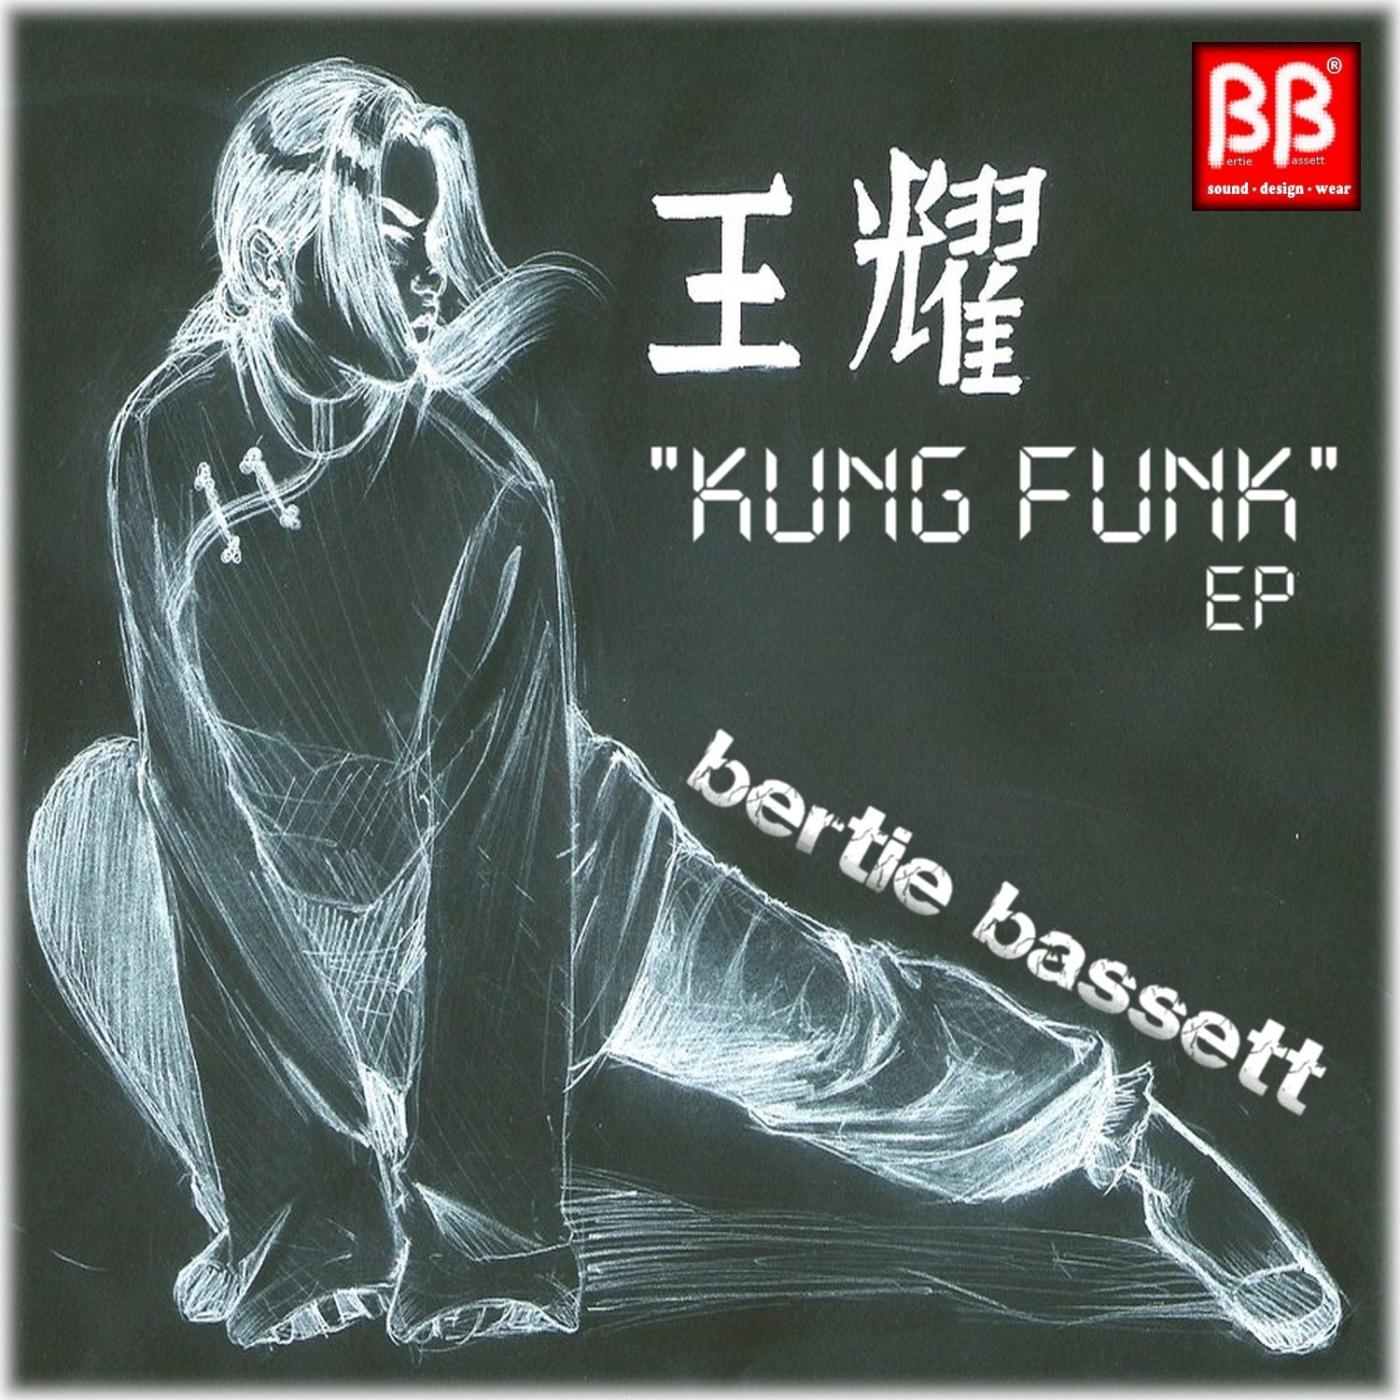 bertie bassett - The Organ (Original Mix)